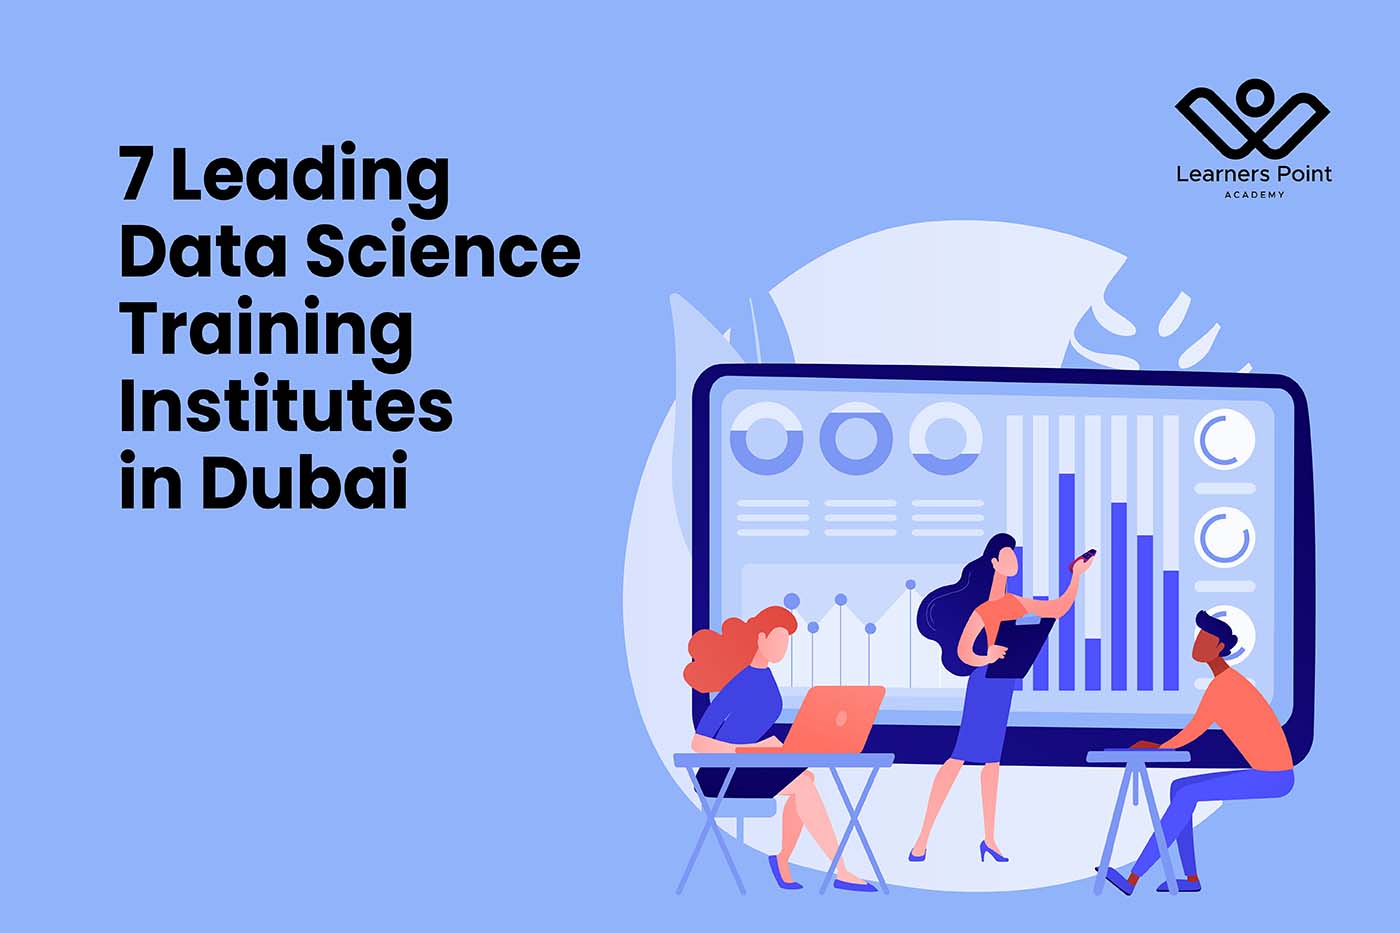 7 Leading Data Science Training Institutes in Dubai